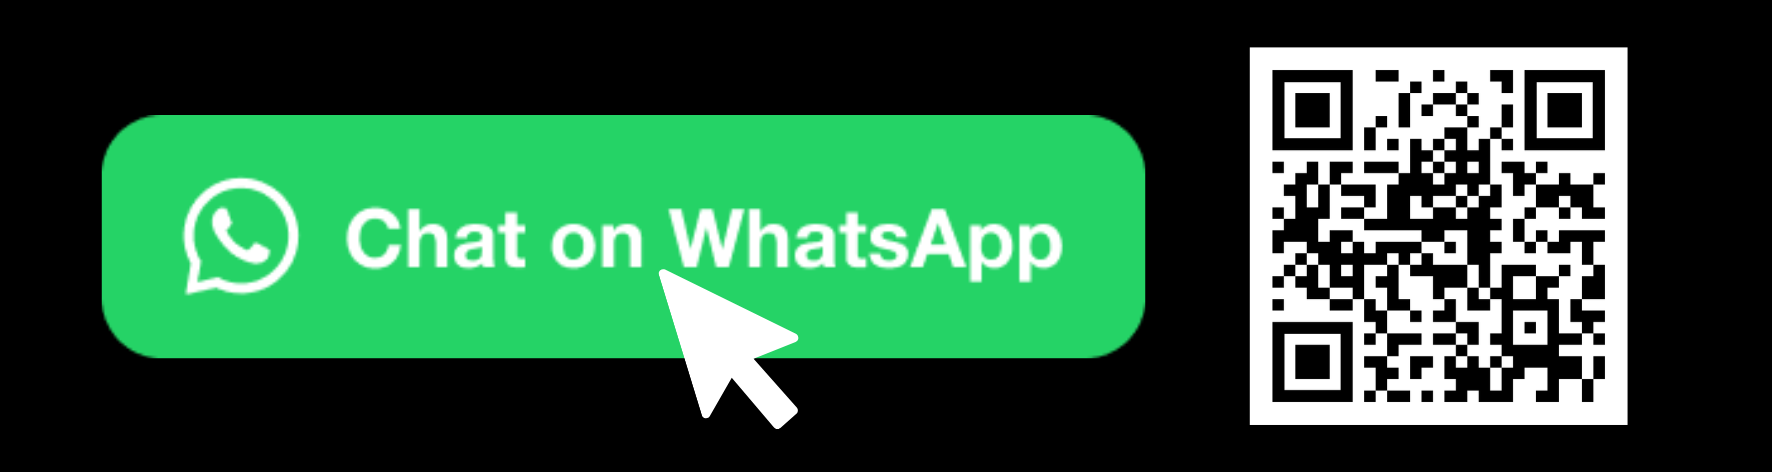 WhatsApp_QR_Code_1